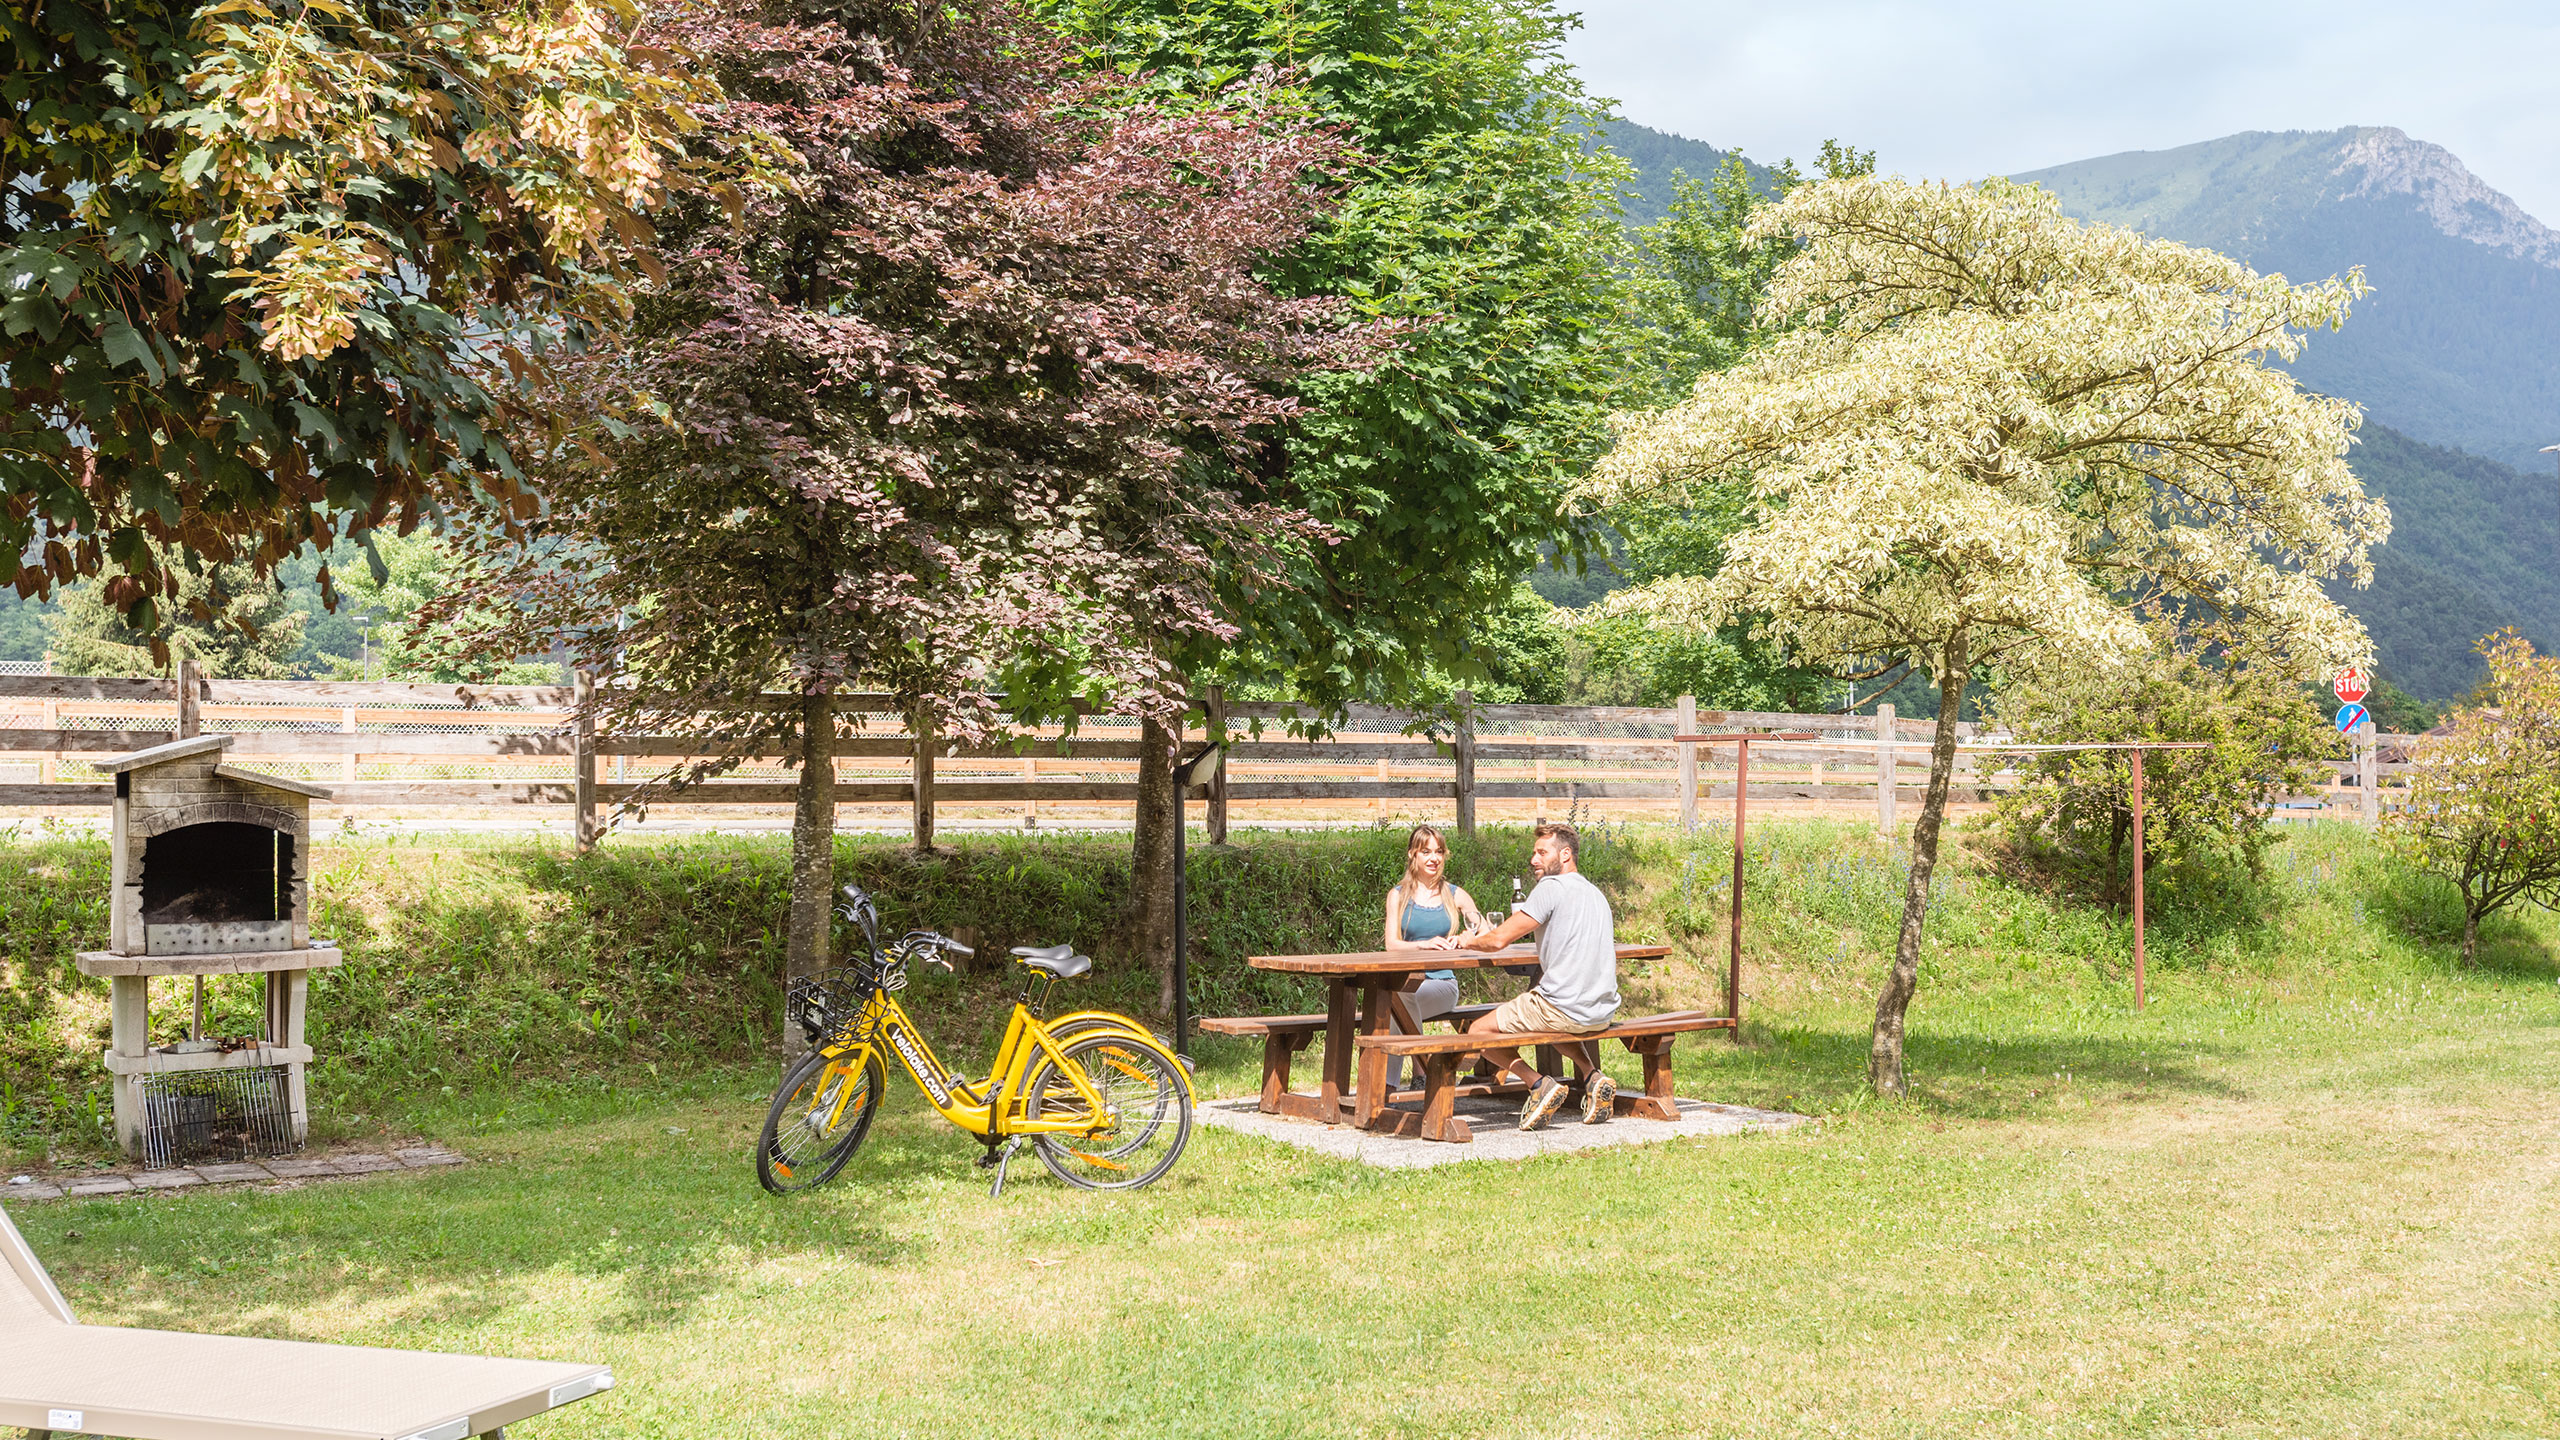 Crosina Holiday – Ferienwohnungen in der Nähe des Ledrosees im Trentino für einen Paar- oder Familienurlaub Willkommen in der Casa Lucia